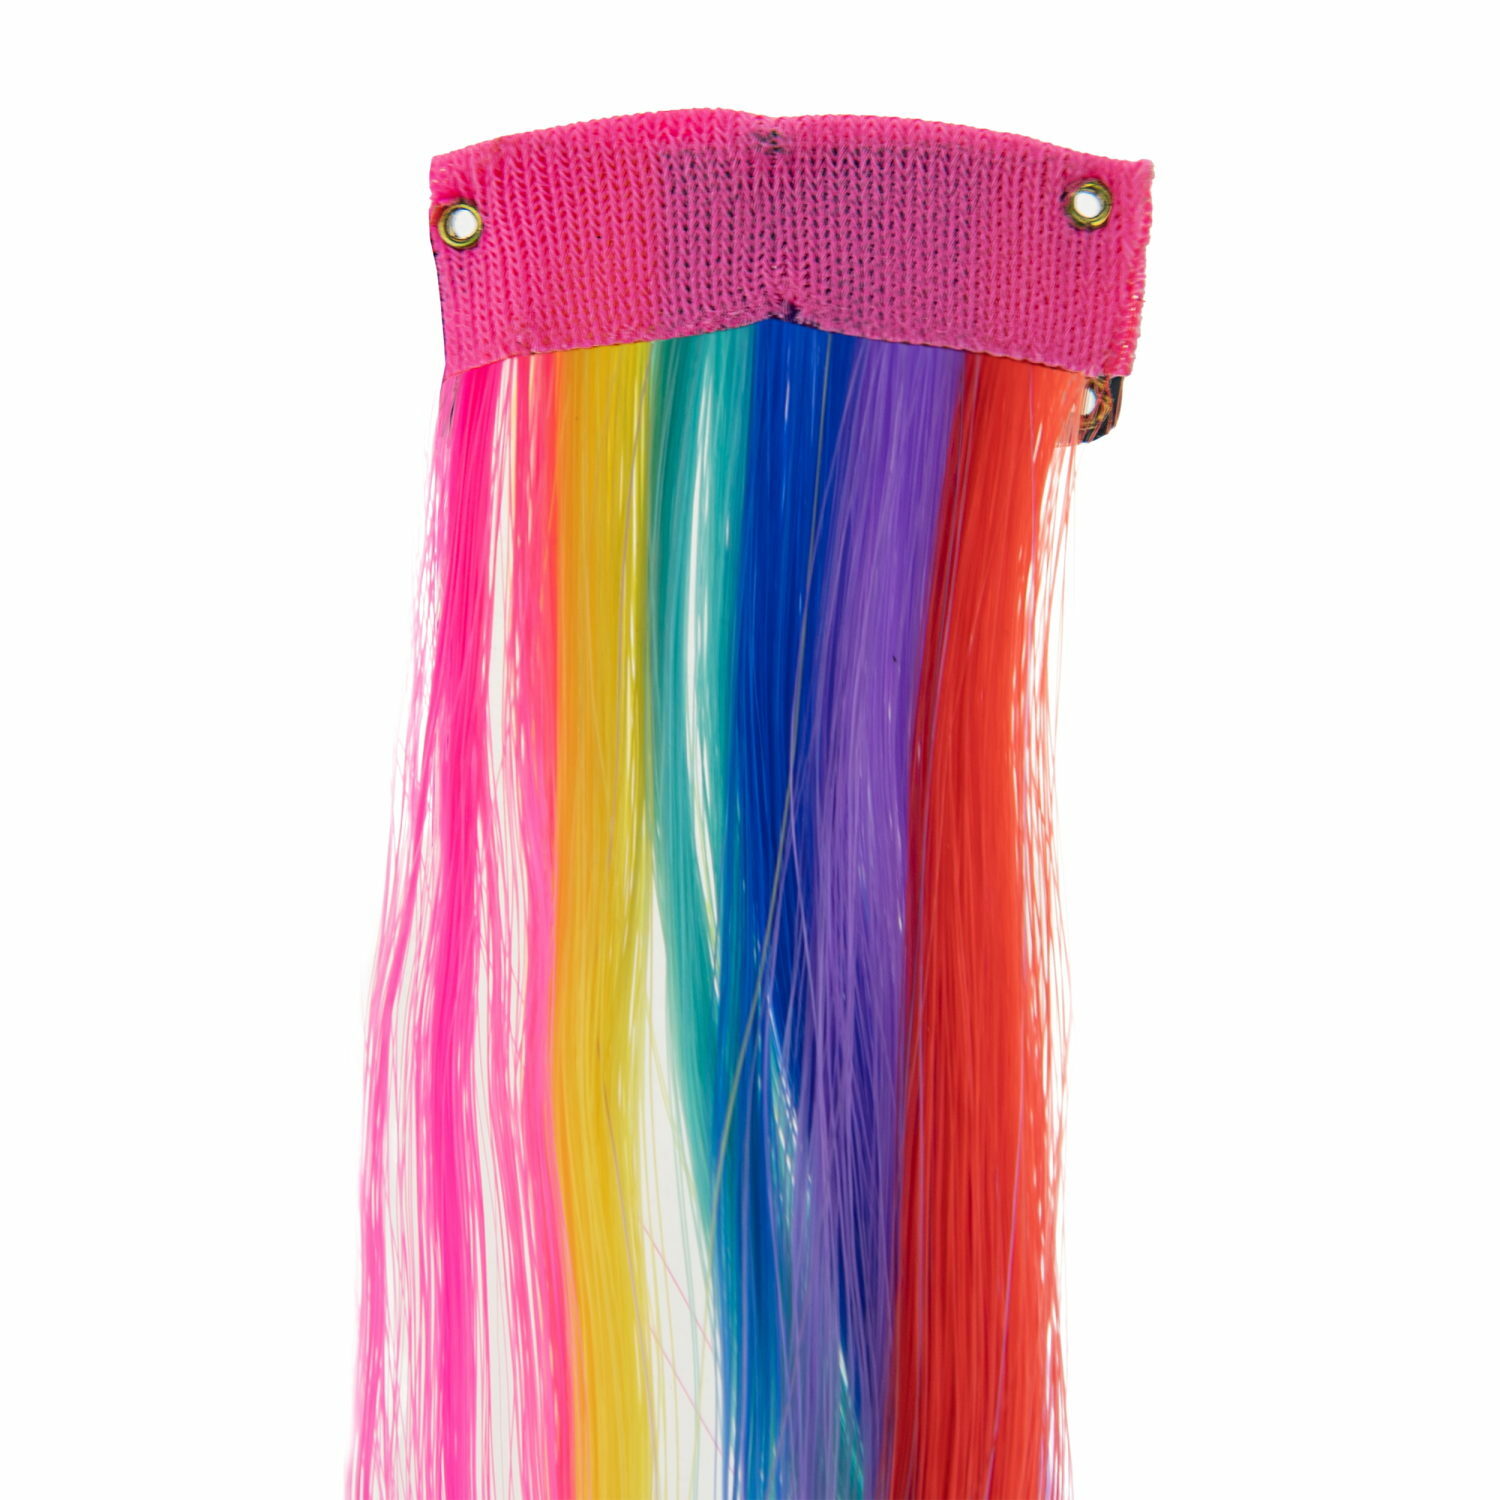 Цветные пряди для волос Lukky Fashion на заколках искусственные детские 50 см аксессуары для девочек - фото 6